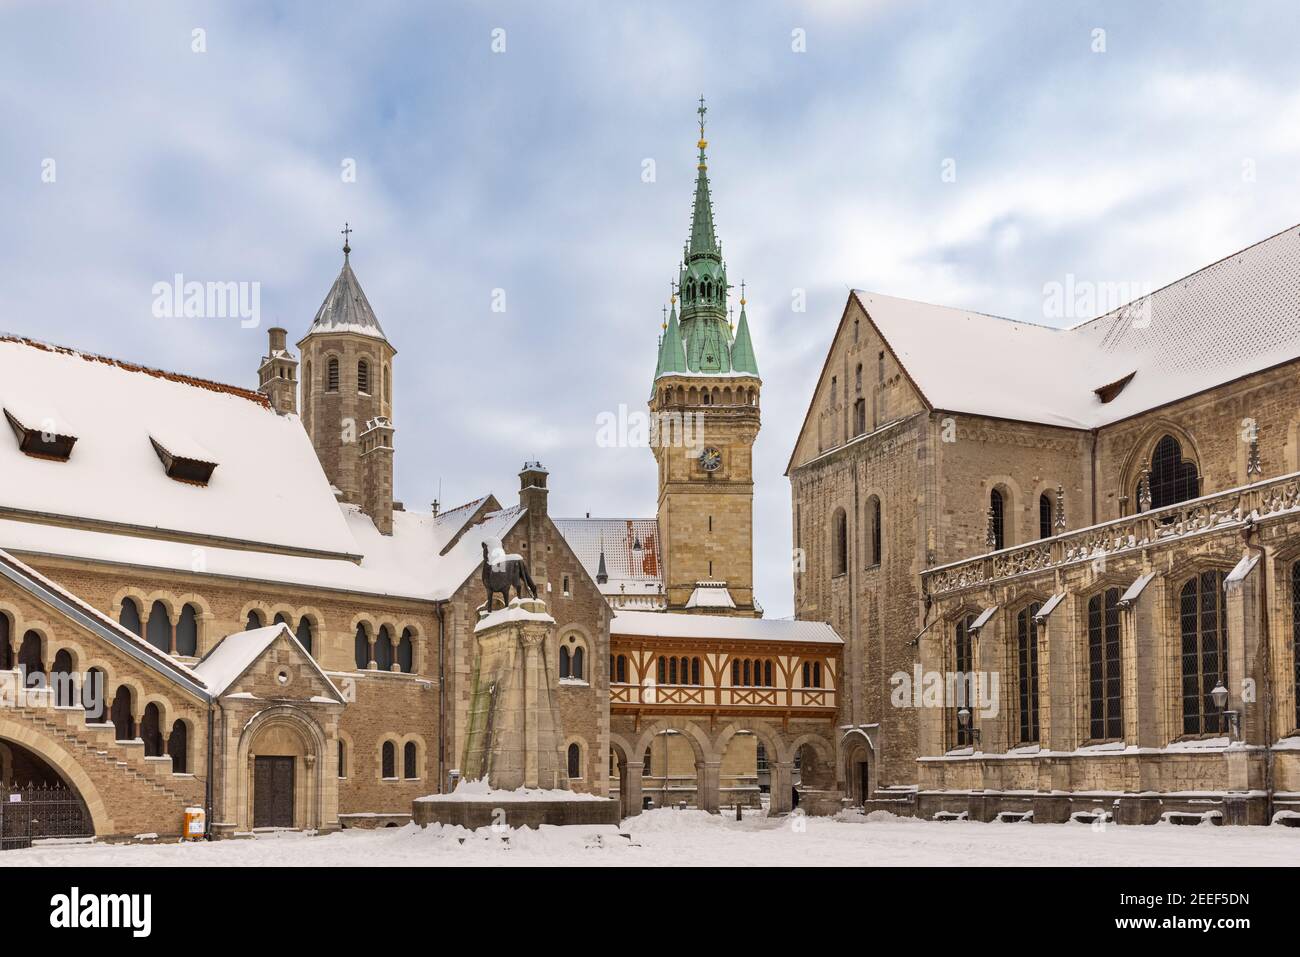 Historische Gebäude mit Schnee bedeckt nach seltenen Schneesturm in Braunschweig, Deutschland. Stockfoto